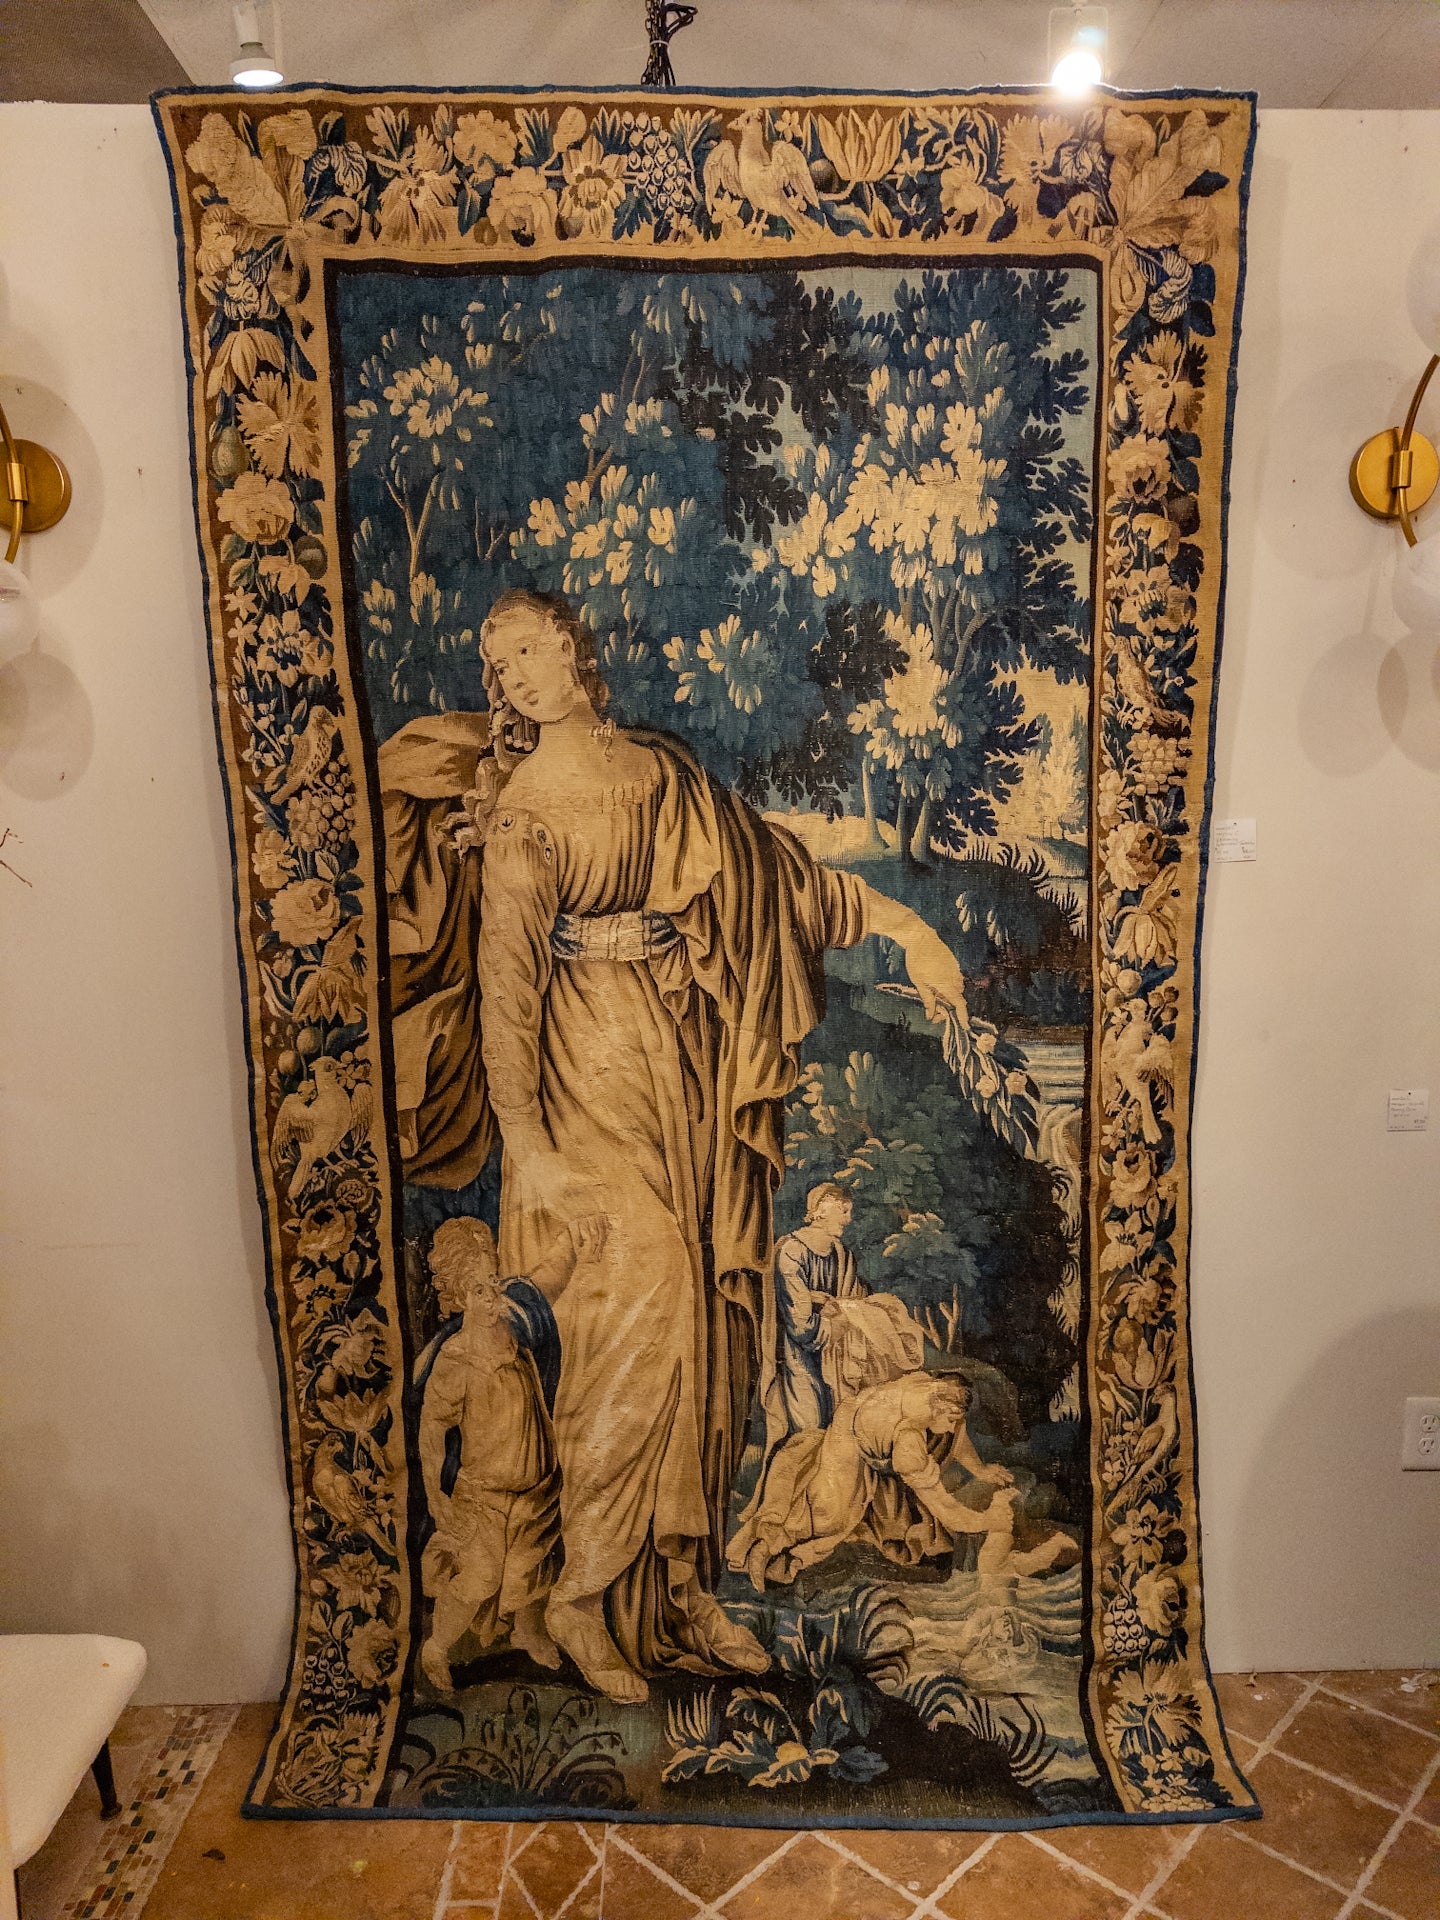 Der flämische Aubusson-Wandteppich aus dem 17. Jahrhundert, der eine Frau zeigt, die mit ihrem Kind reist oder spazieren geht, ist eine fesselnde Darstellung des Alltagslebens aus dieser Zeit. Der mit bemerkenswerter Detailgenauigkeit und Finesse